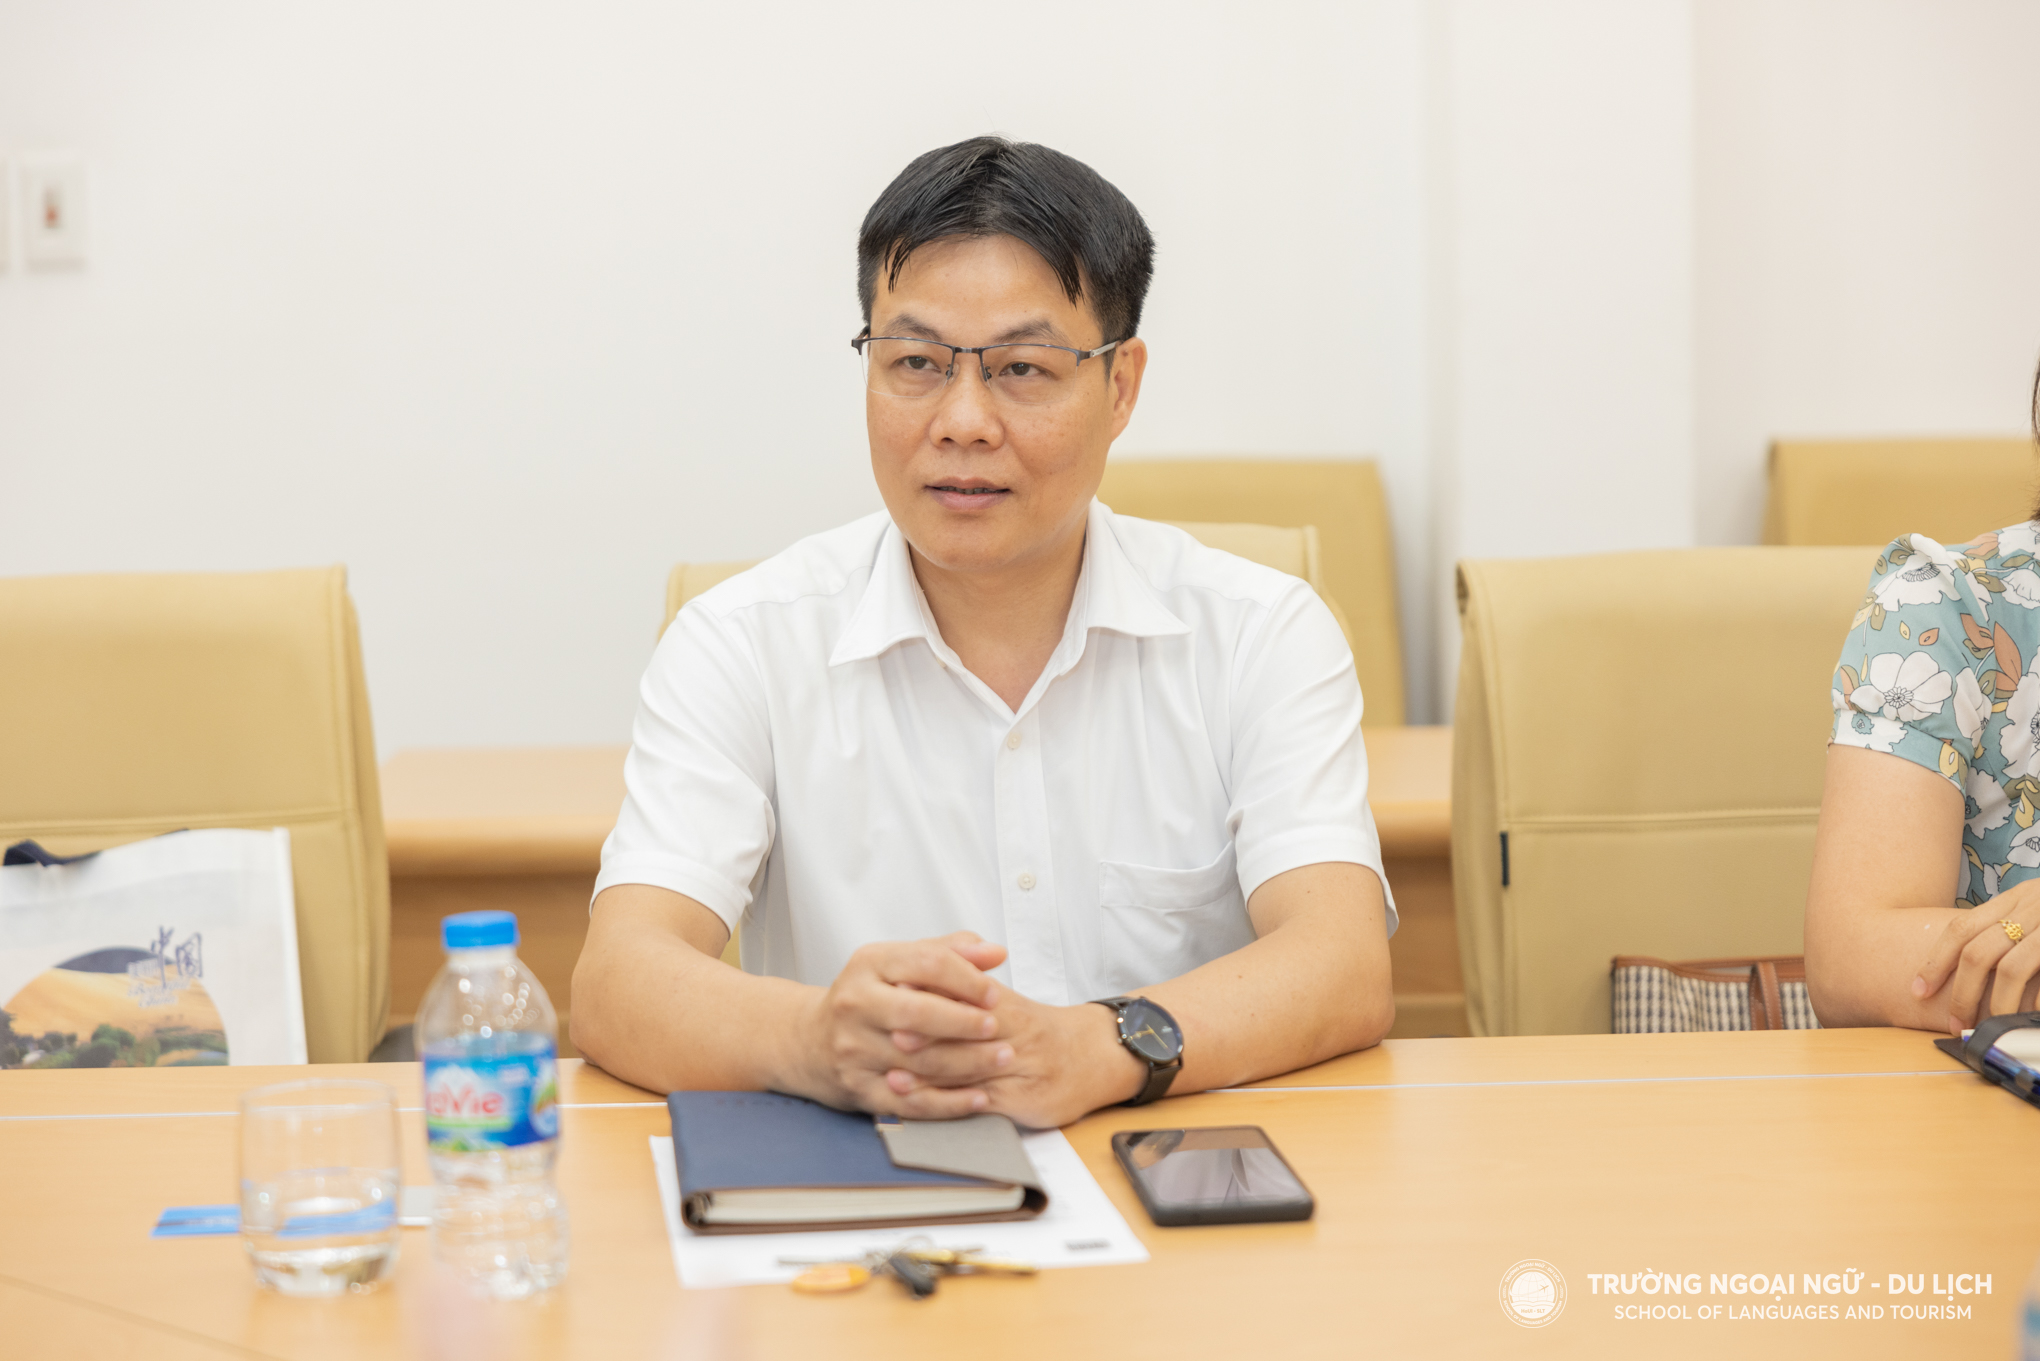 Trường Ngoại ngữ - Du lịch gặp mặt và kết nối hợp tác với Trung tâm văn hóa Trung Quốc tại Hà Nội